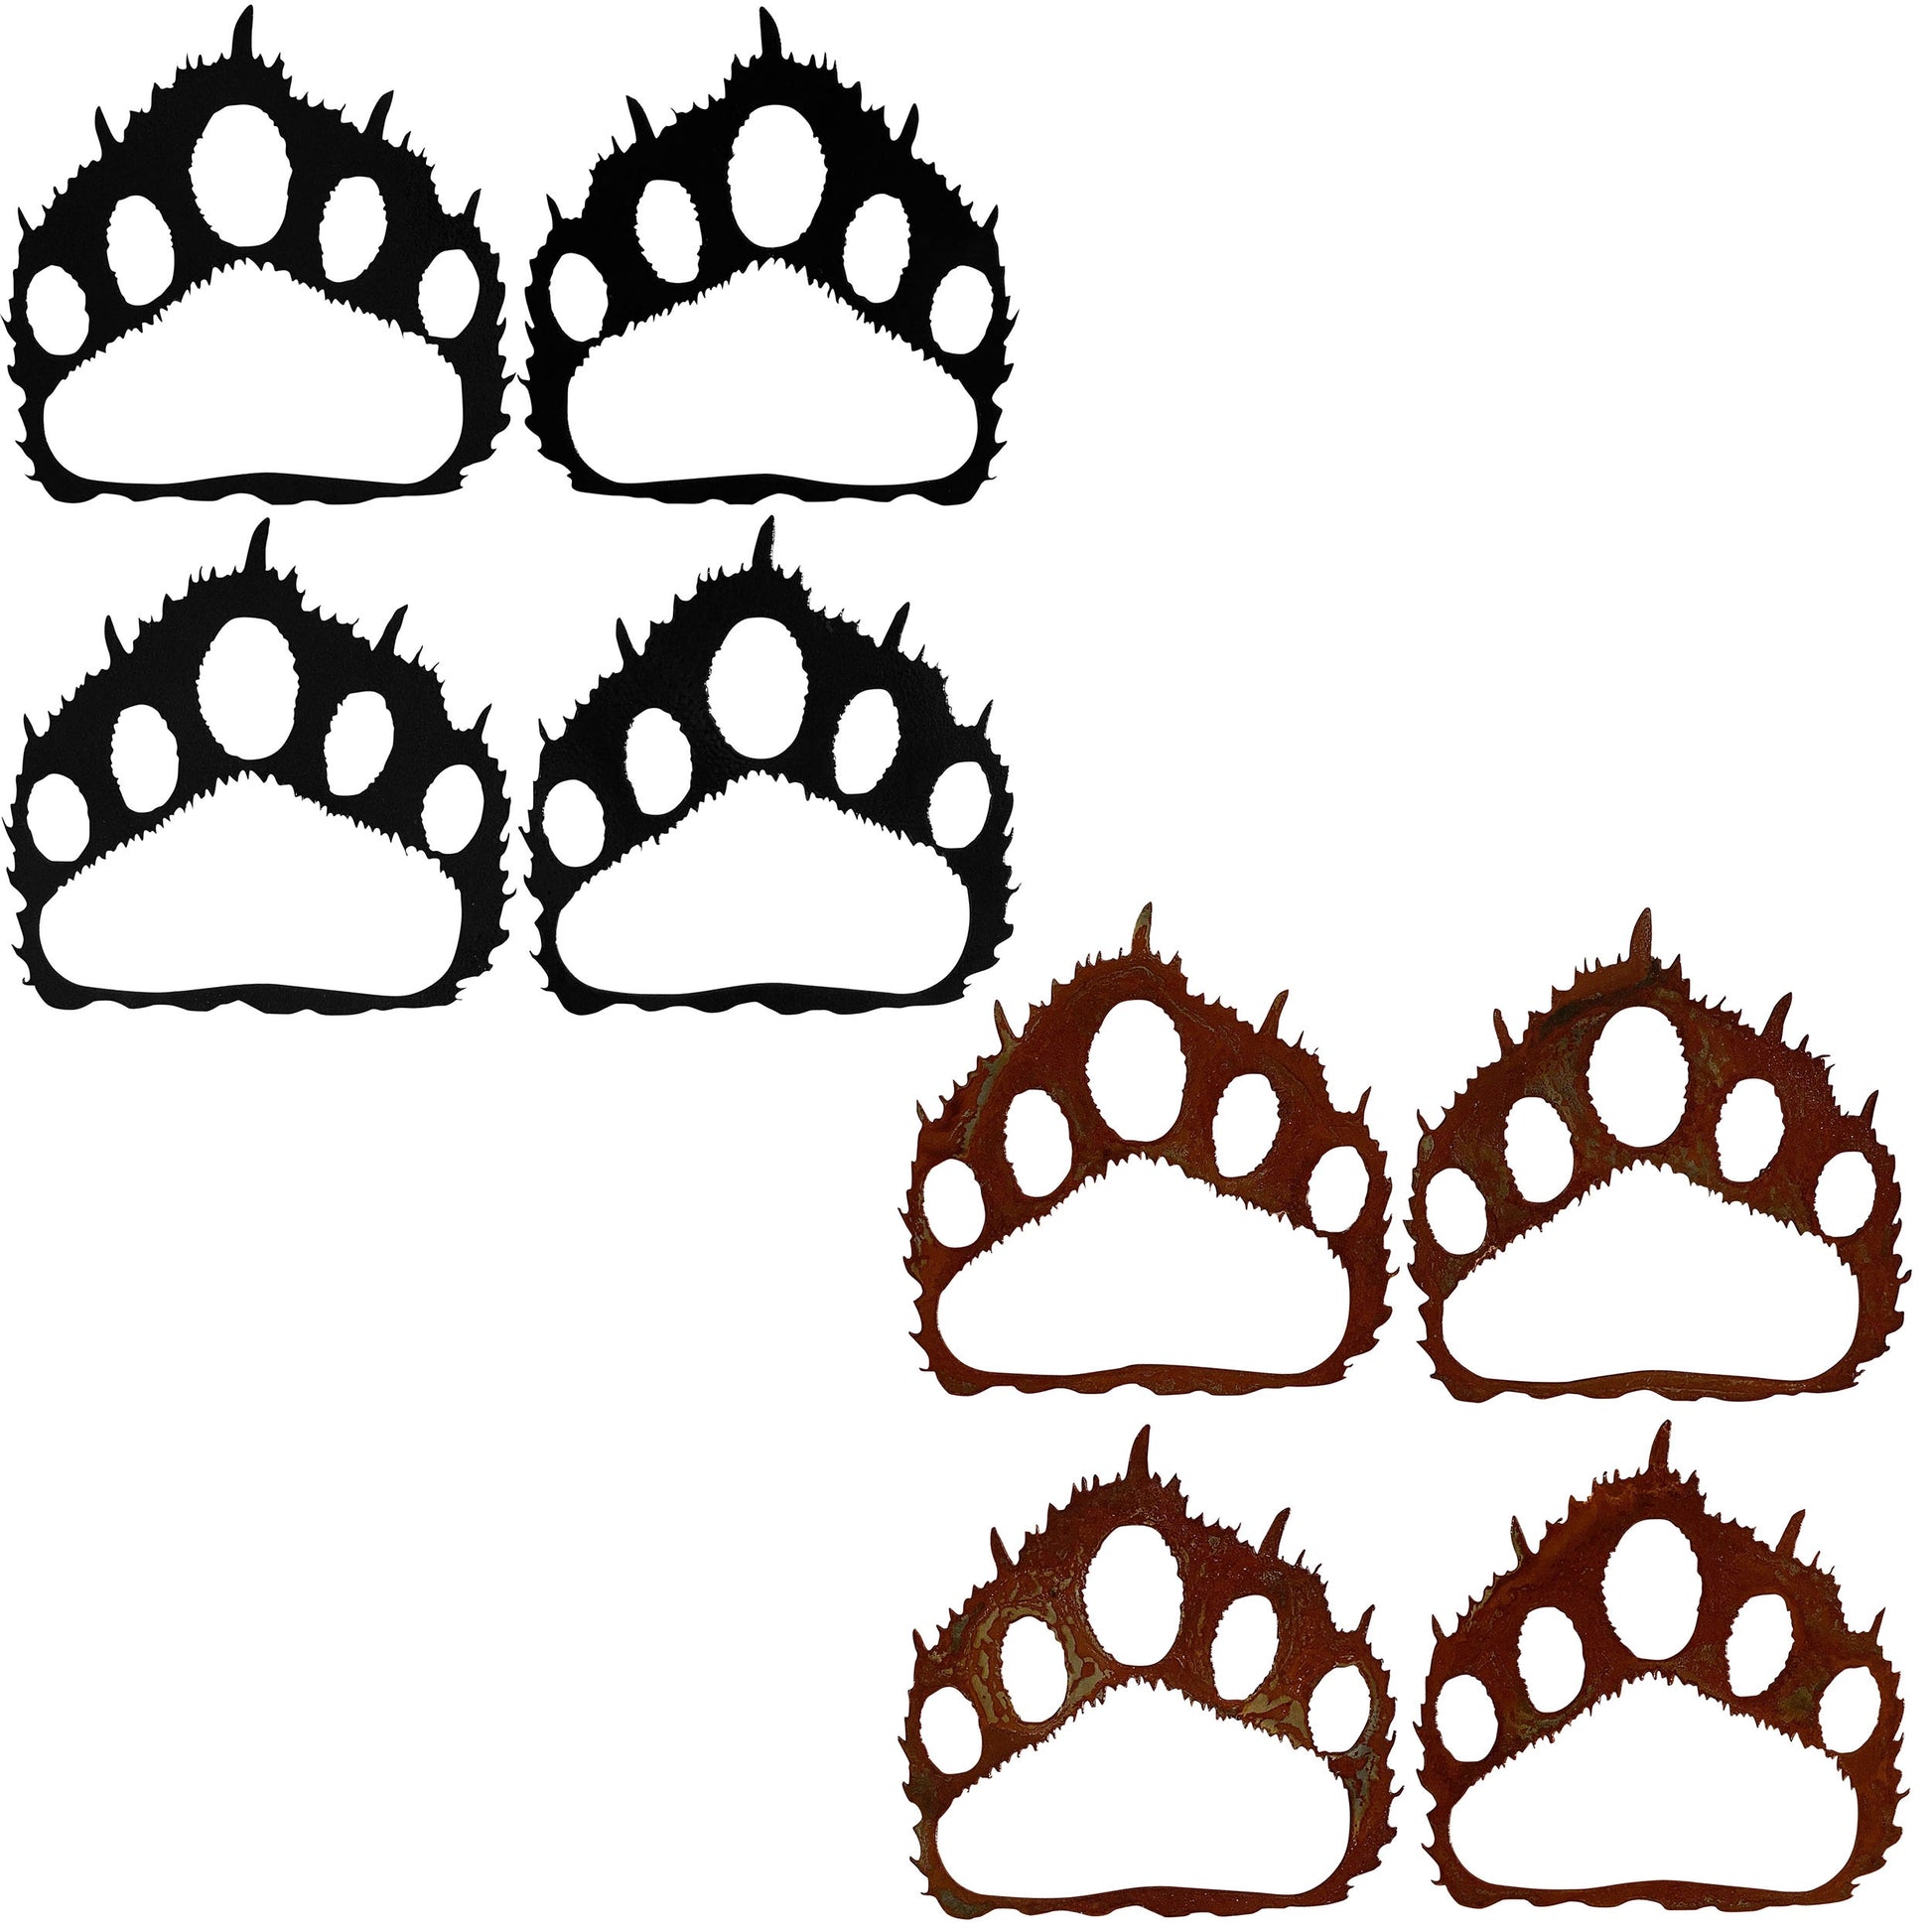 bear-paw-prints-sets